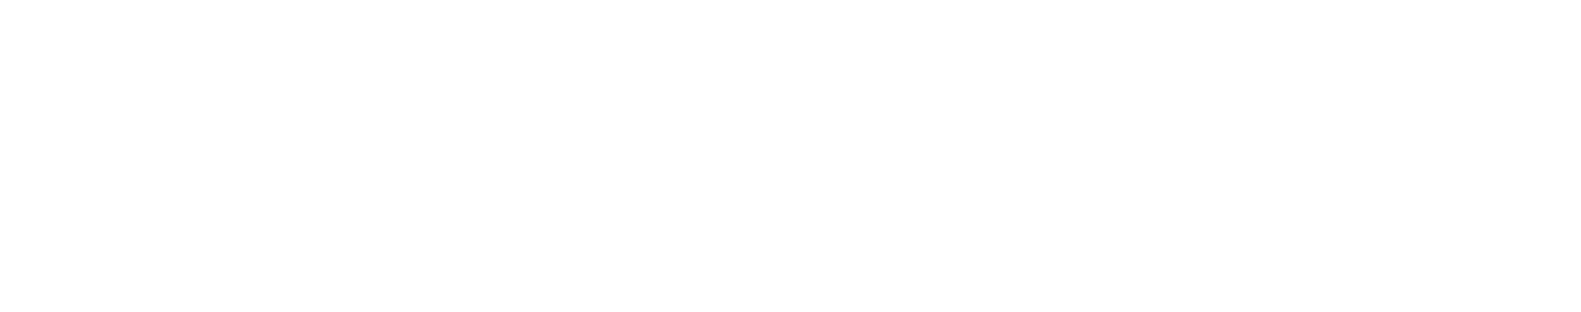 Eurofins Scientific logo large for dark backgrounds (transparent PNG)